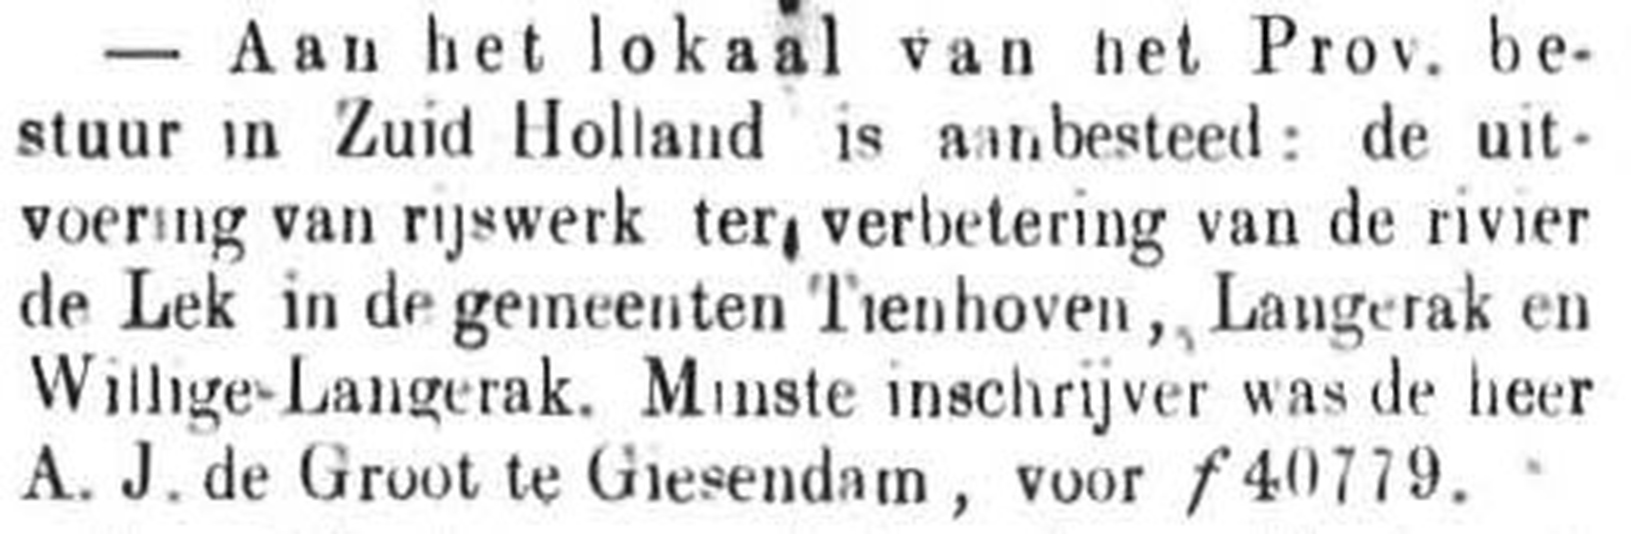 Schoonhovensche Courant 00129 1871-12-17 artikel 1